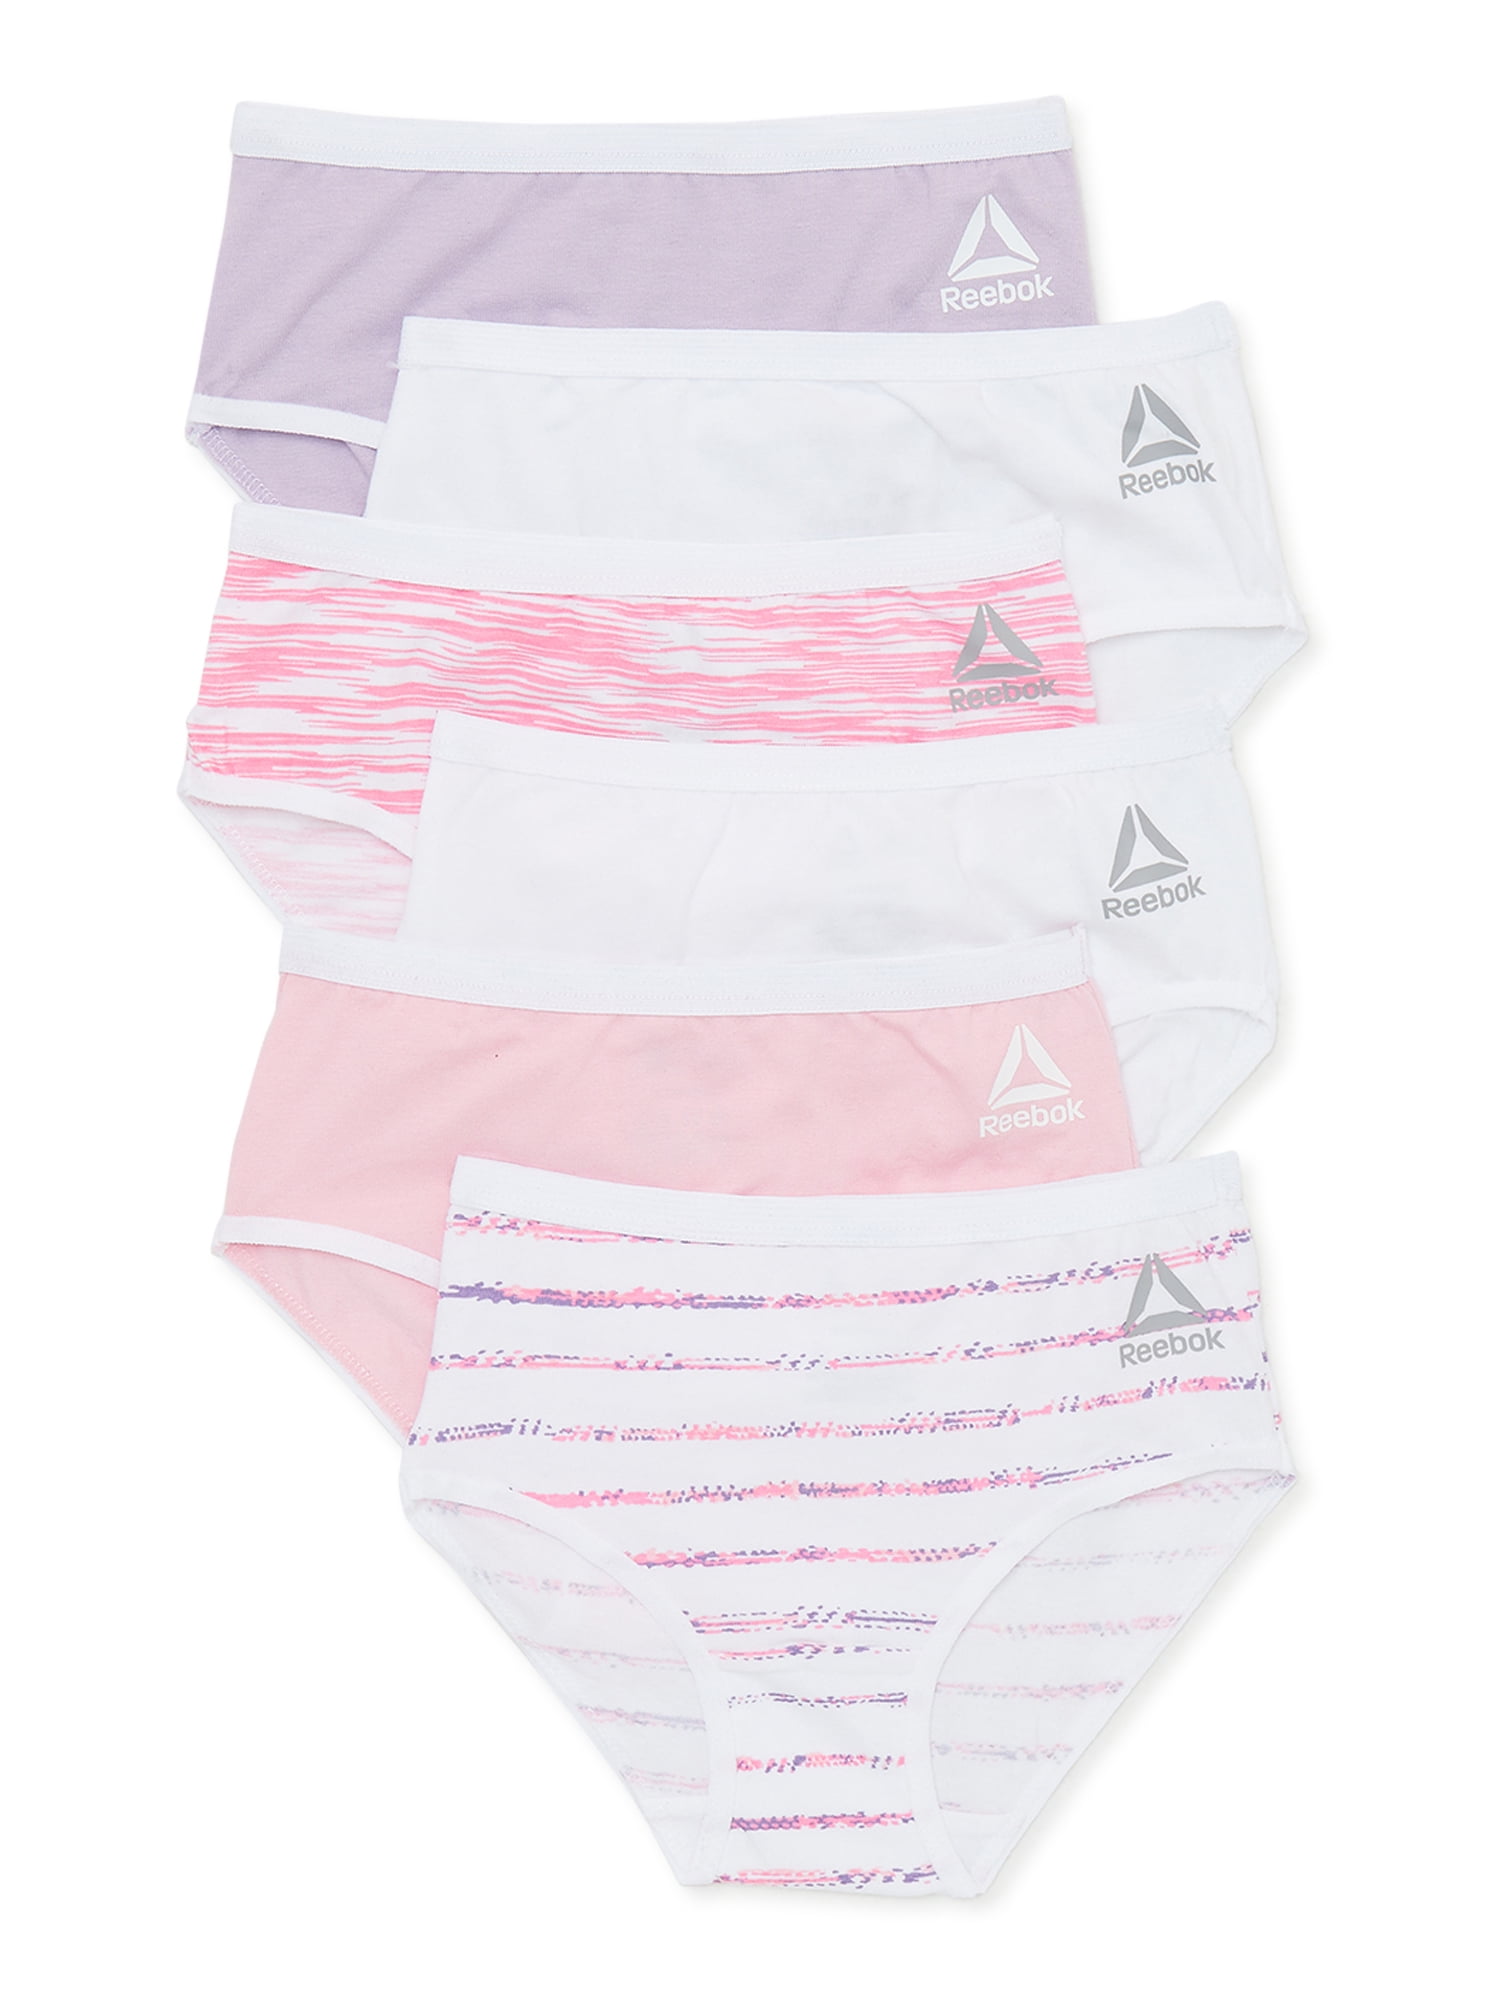 Reebok Toddlers Girls' Underwear Stretch Briefs, 6-Pack, Sizes 2T-5T